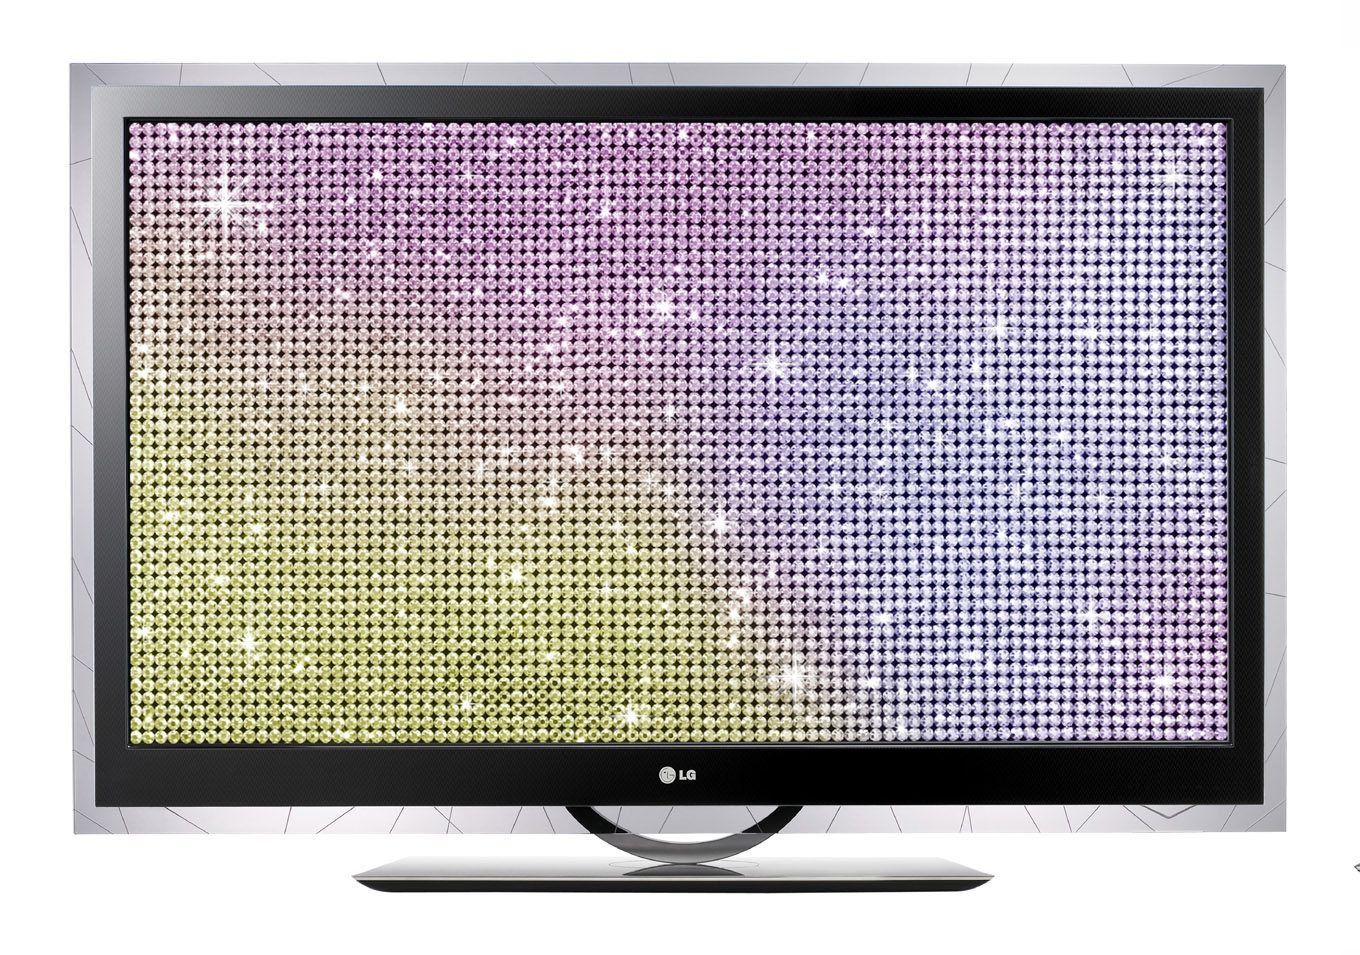 Bedste LG TV i 2022